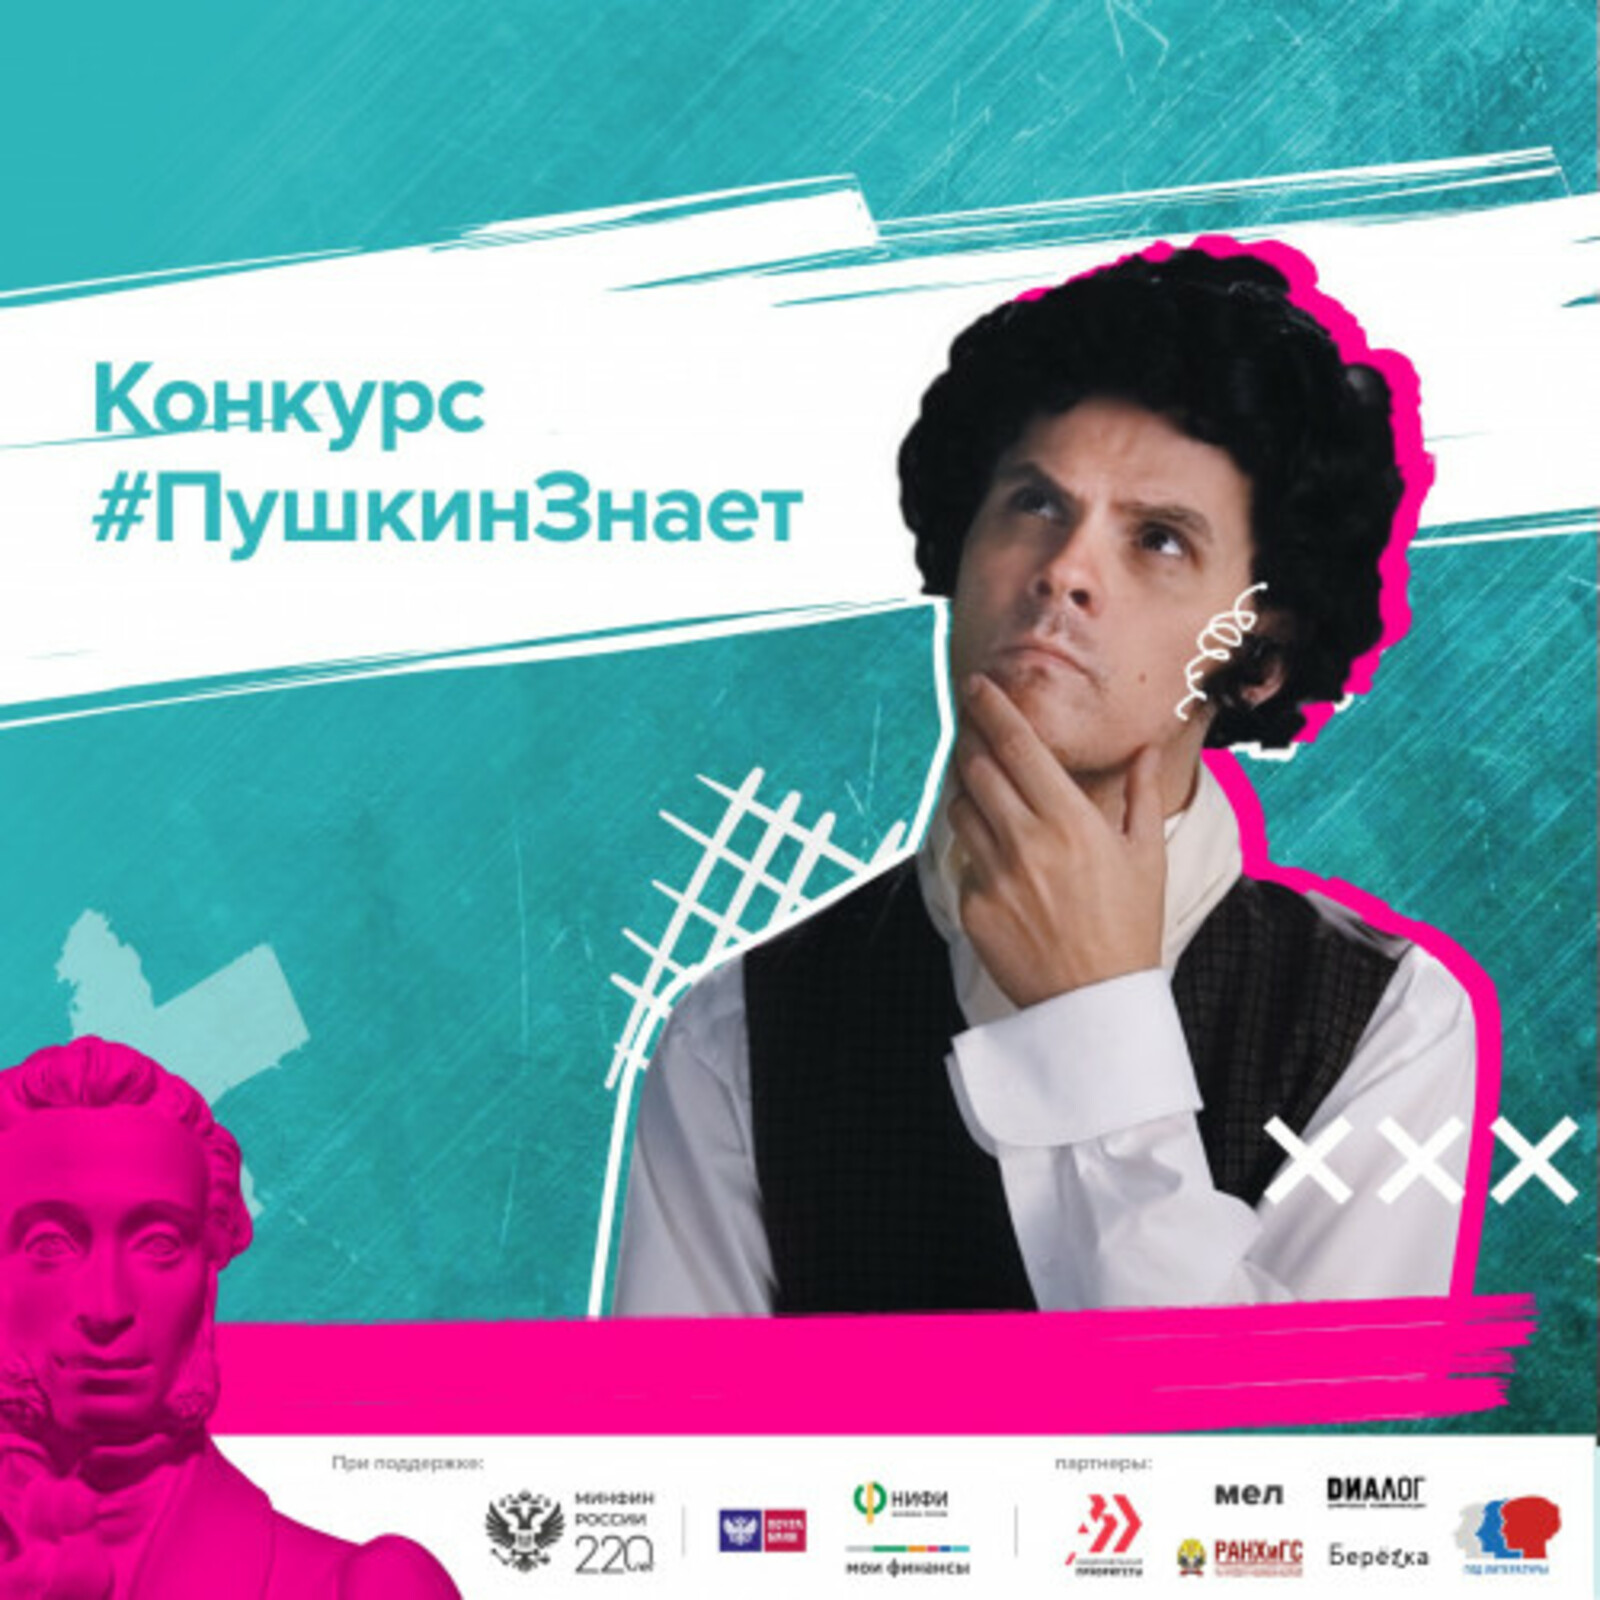 Всероссийский конкурс видеороликов по финансовой грамотности «Пушкин знает!» продлится до 25 декабря